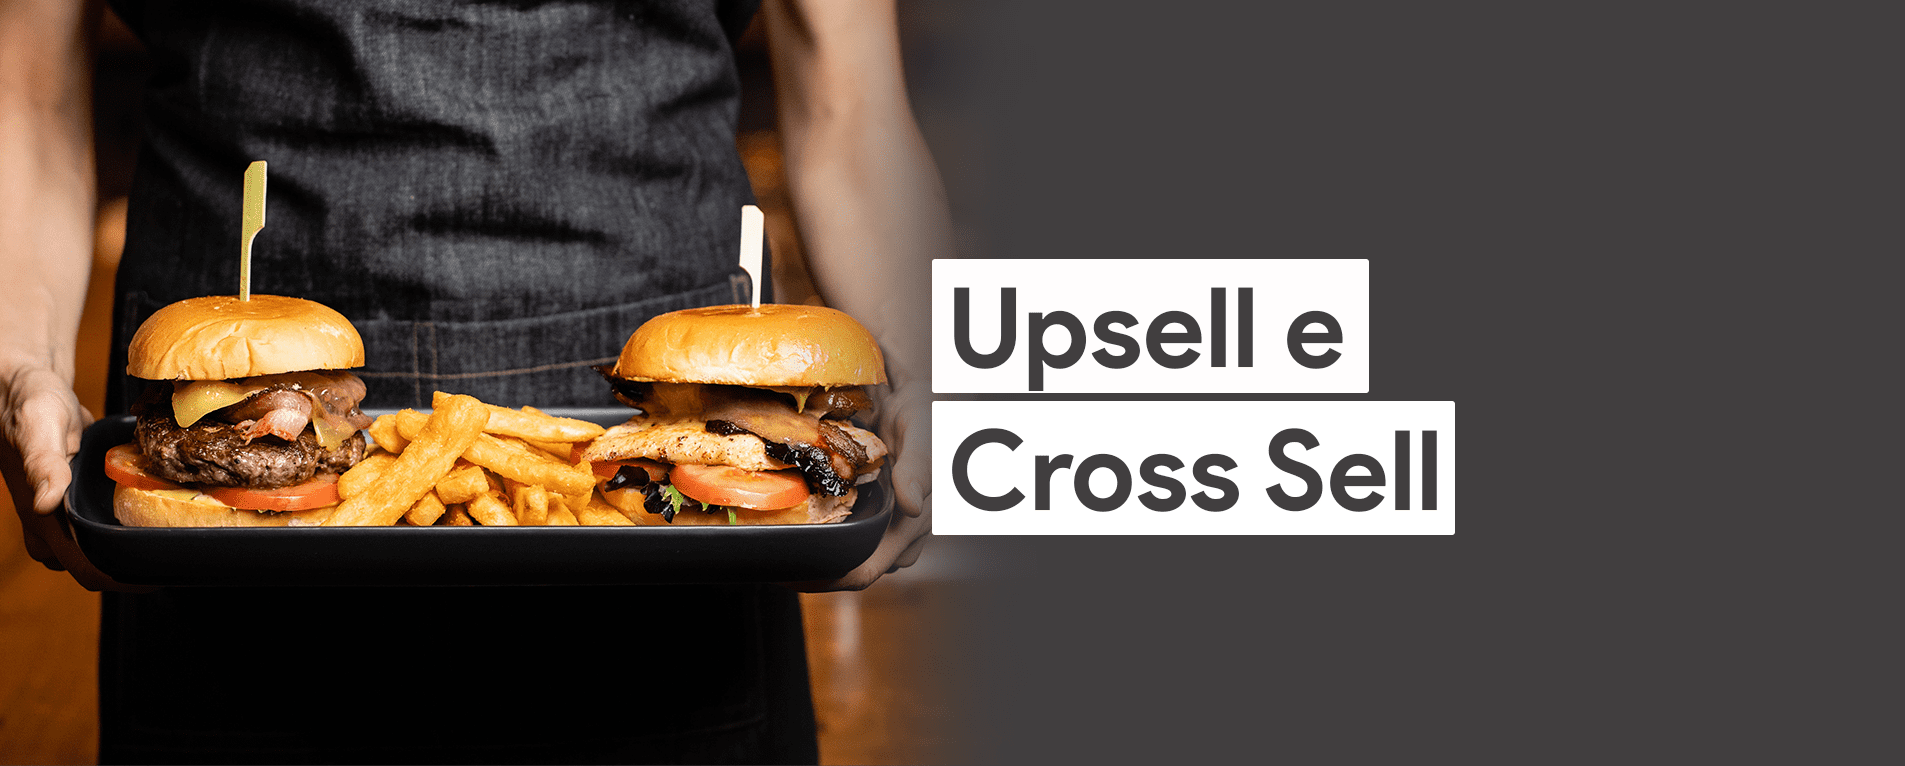 O Que é Upsell e Cross Sell e Como Usar em Restaurantes?